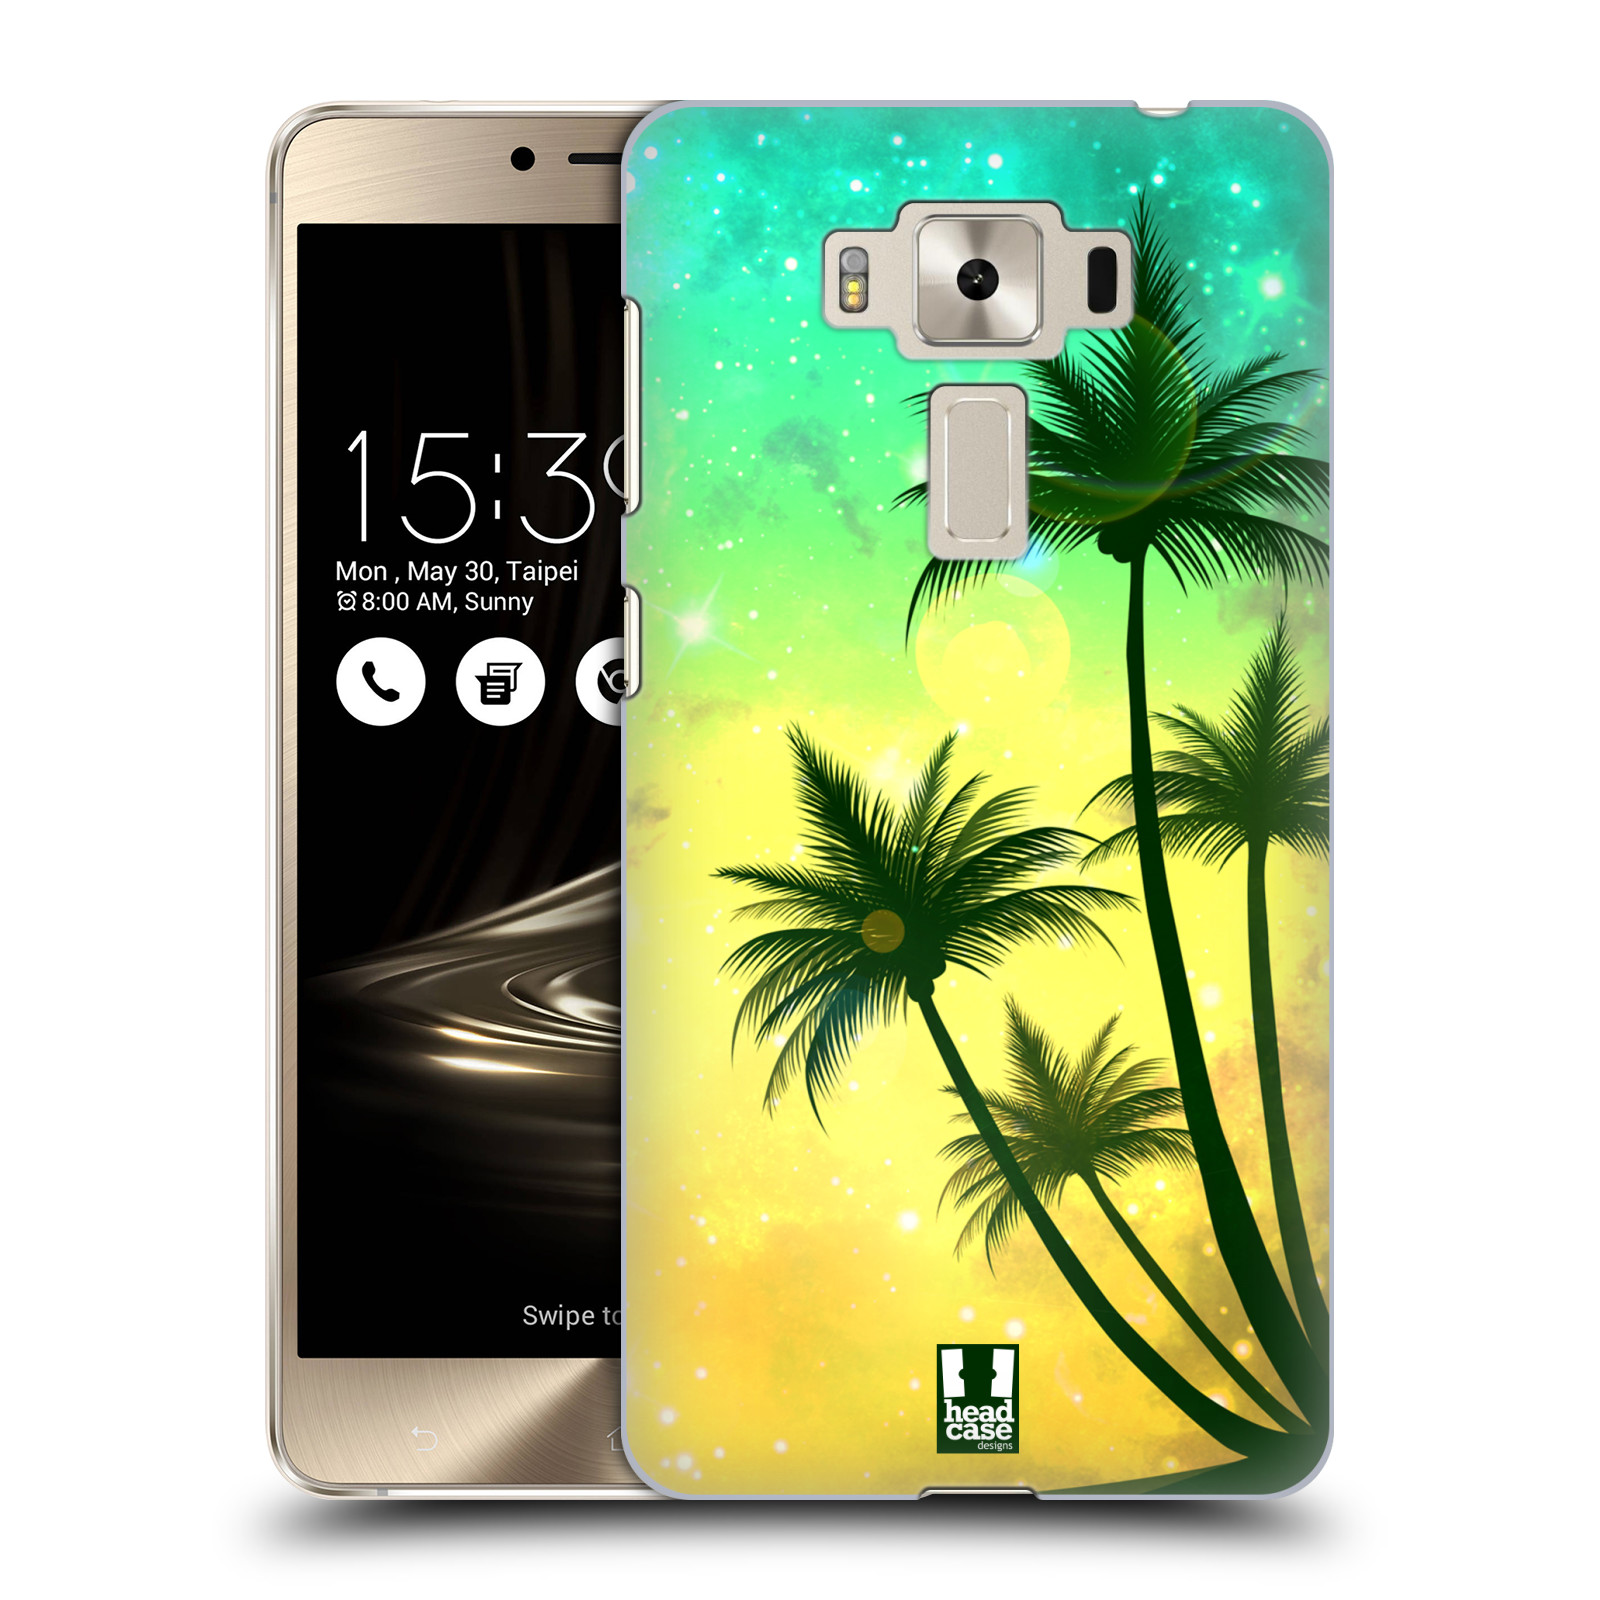 HEAD CASE plastový obal na mobil Asus Zenfone 3 DELUXE ZS550KL vzor Kreslený motiv silueta moře a palmy TYRKYSOVÁ